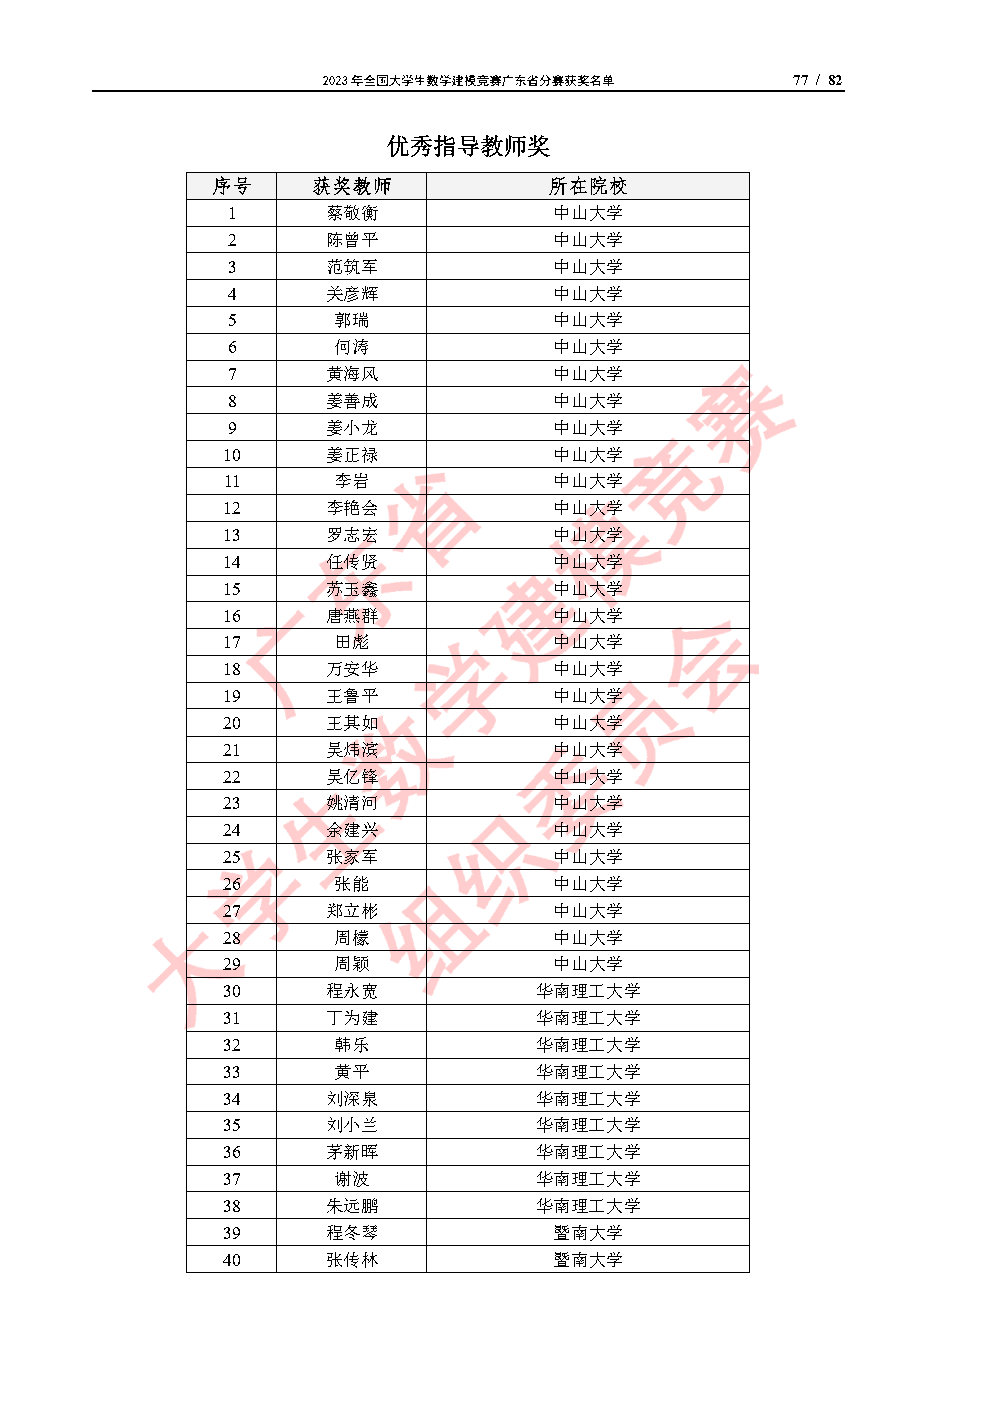 2023年全国大学生数学建模竞赛广东省分赛获奖名单_Page77.jpg